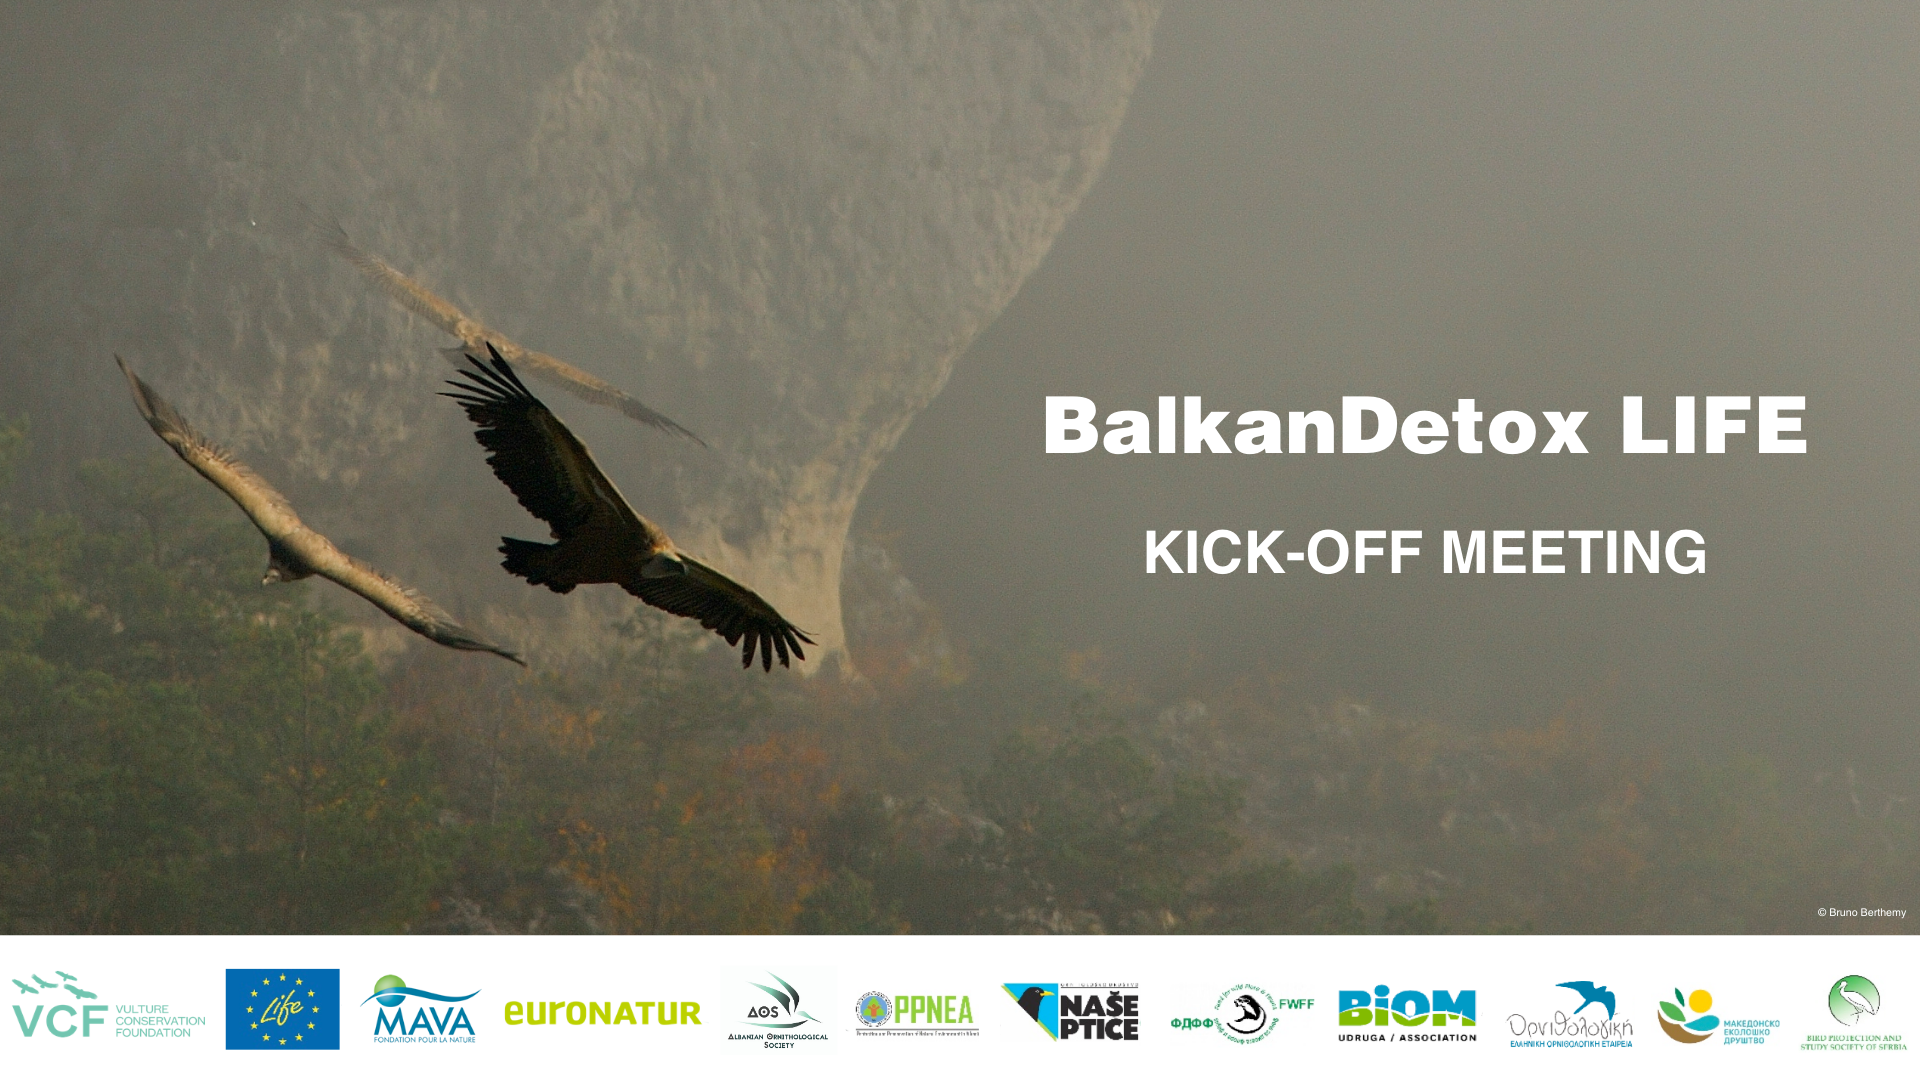 Organizohet me sukses takimi lançues i projektit të ri BalkanDetox LIFE